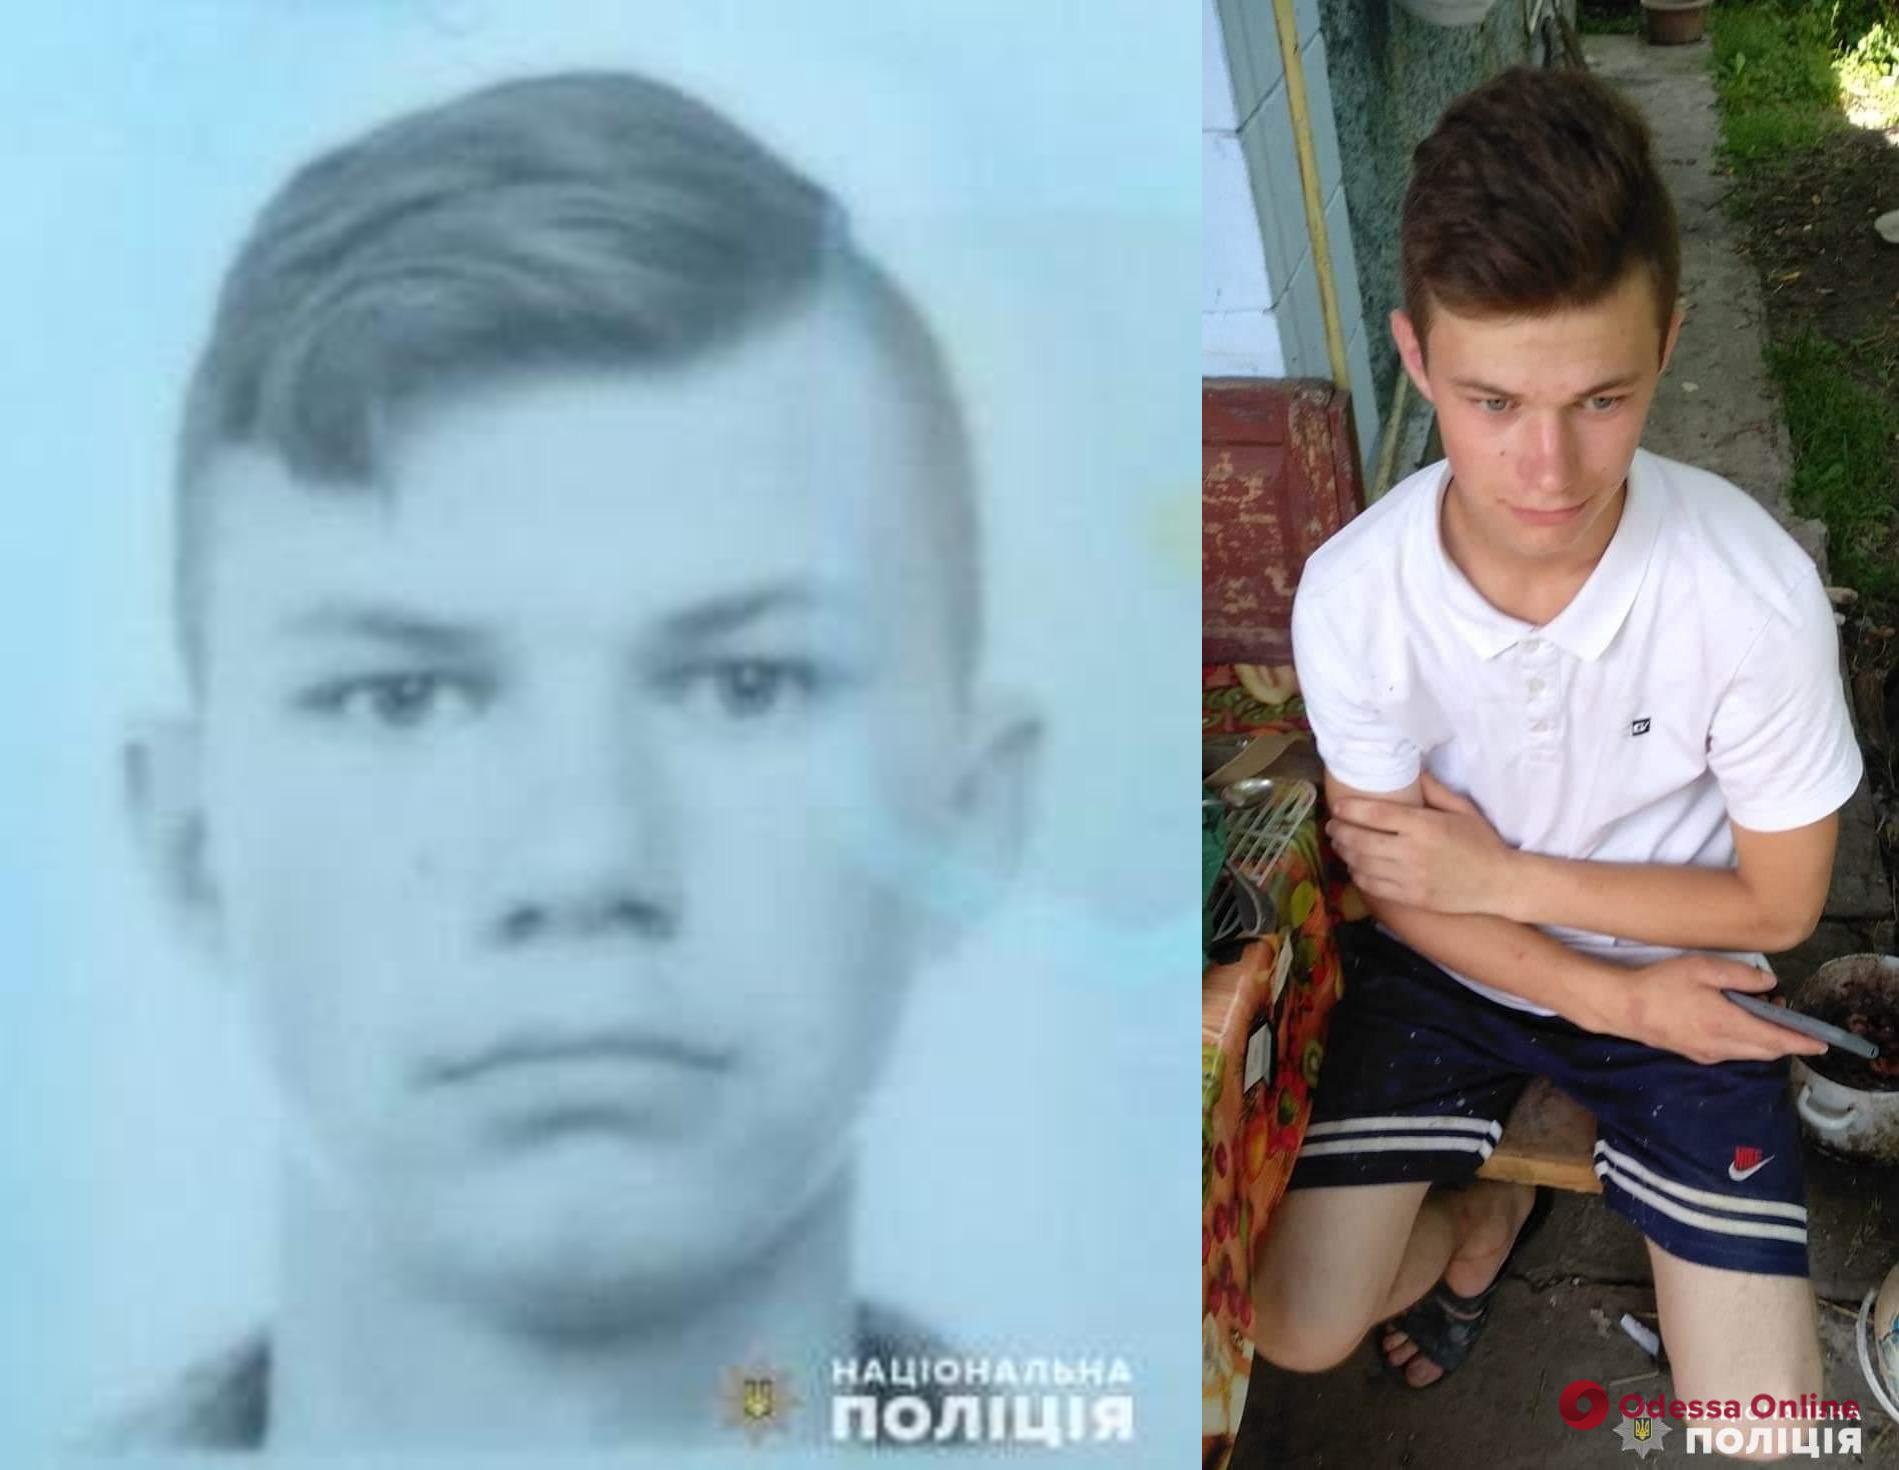 Три дня назад ушел из дома и пропал: полиция разыскивает 17-летнего парня из Подольска